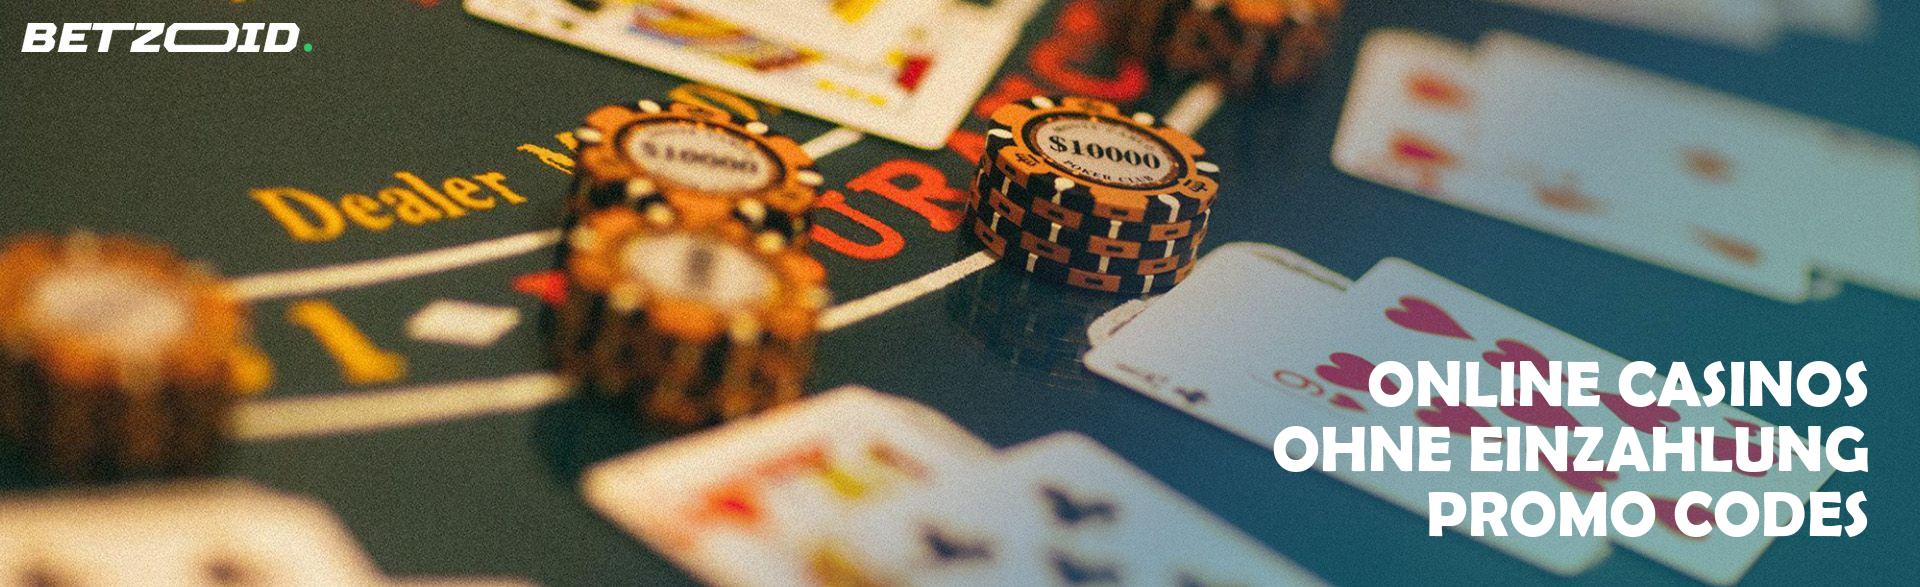 Online Casinos ohne Einzahlung Promo Codes.